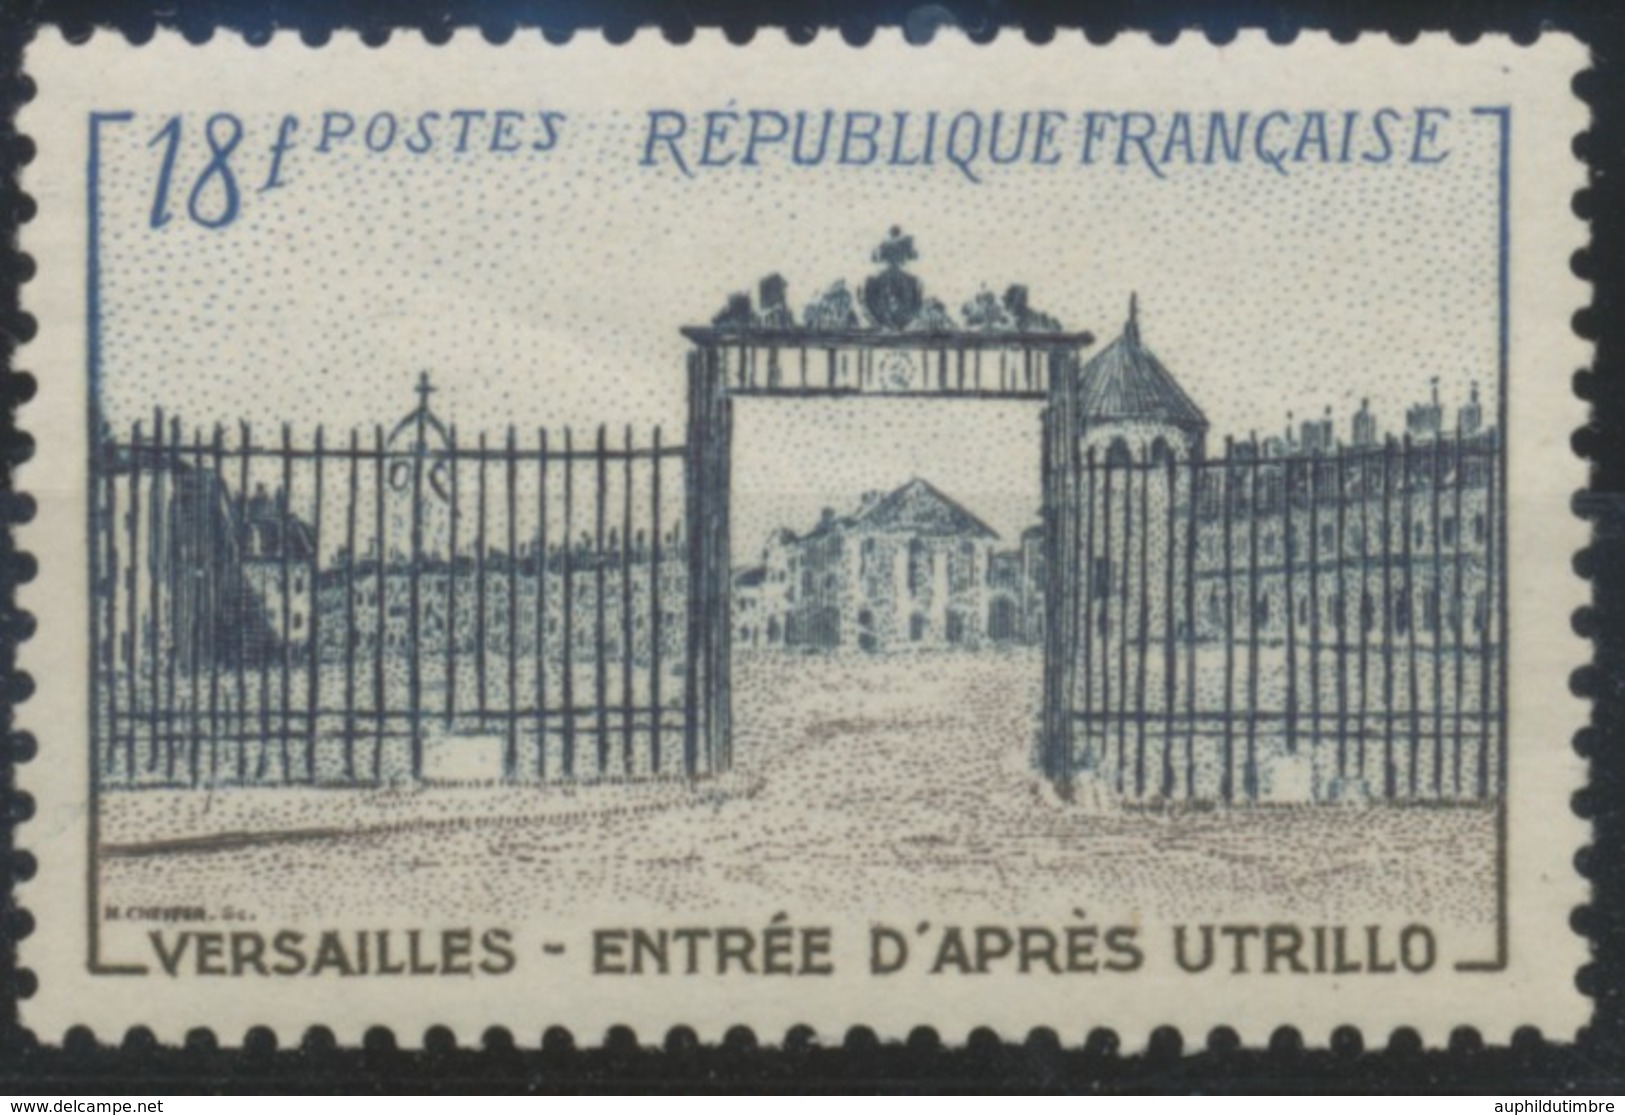 Grille D'entrée Du Château De Versailles. Type De 1952 (no 939) 18f. Brun-lilas, Bleu-noir Et Bleu. Neuf Luxe ** Y988 - Unused Stamps